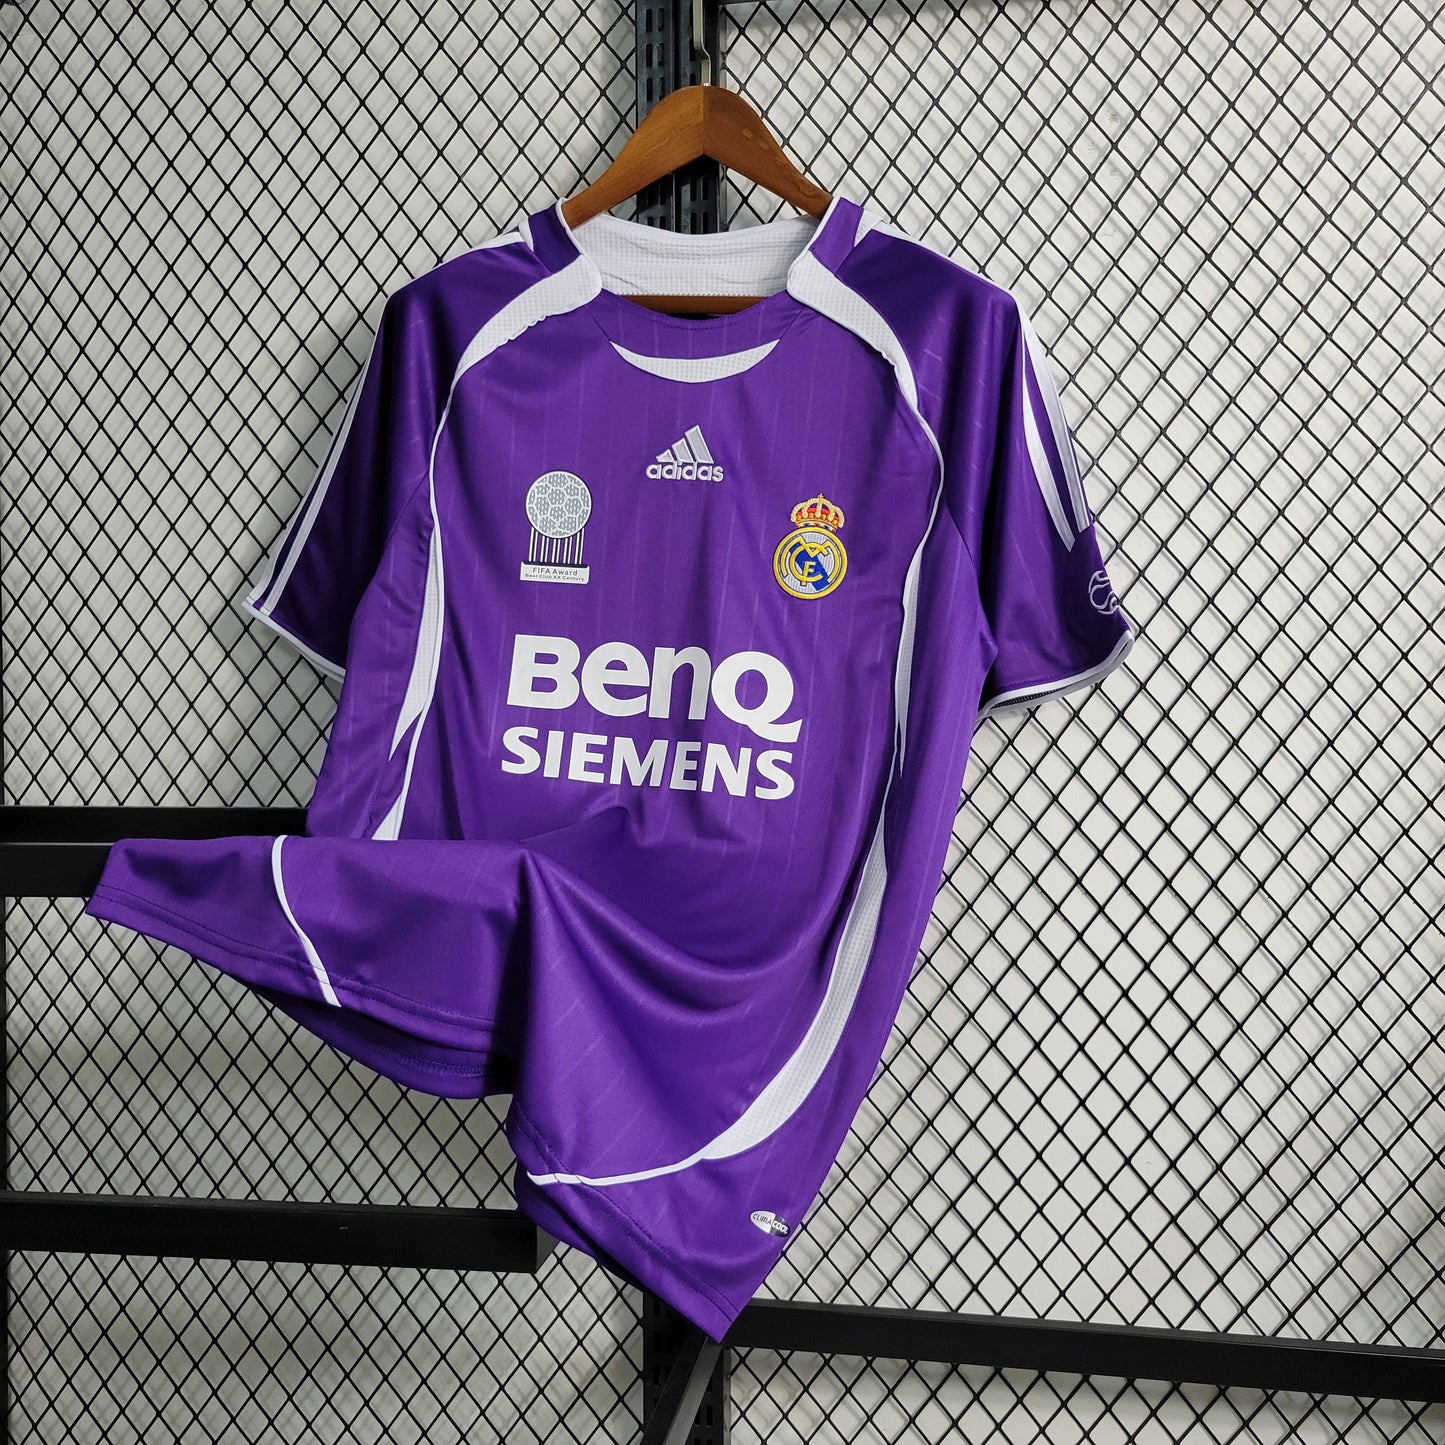 Real Madrid Purple RETRO 2006